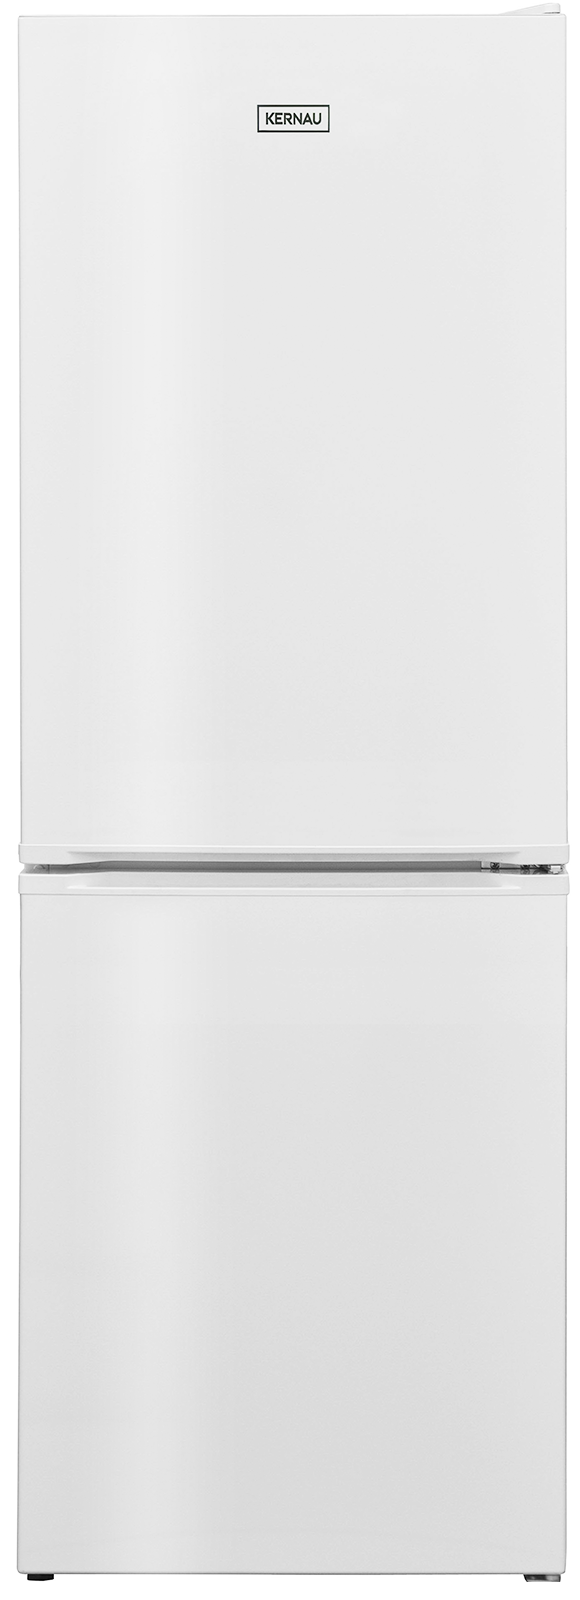 Двухкамерный холодильник KERNAU KFRC 15153 W